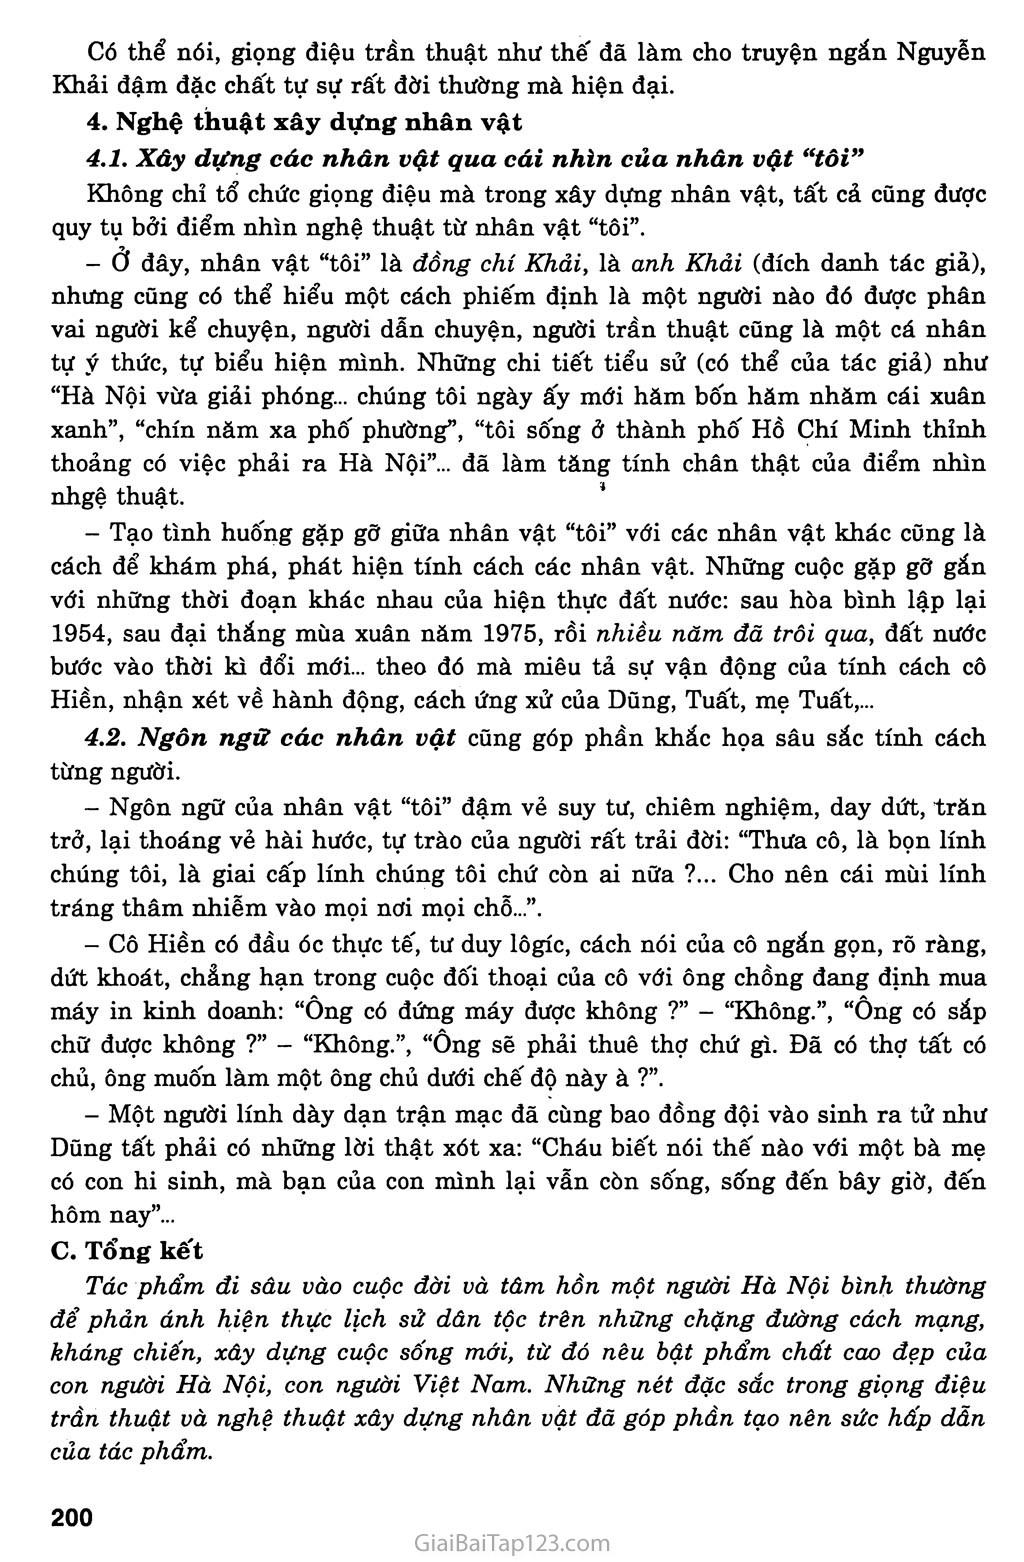 Một người Hà Nội (Nguyễn Khải, 1990) trang 5